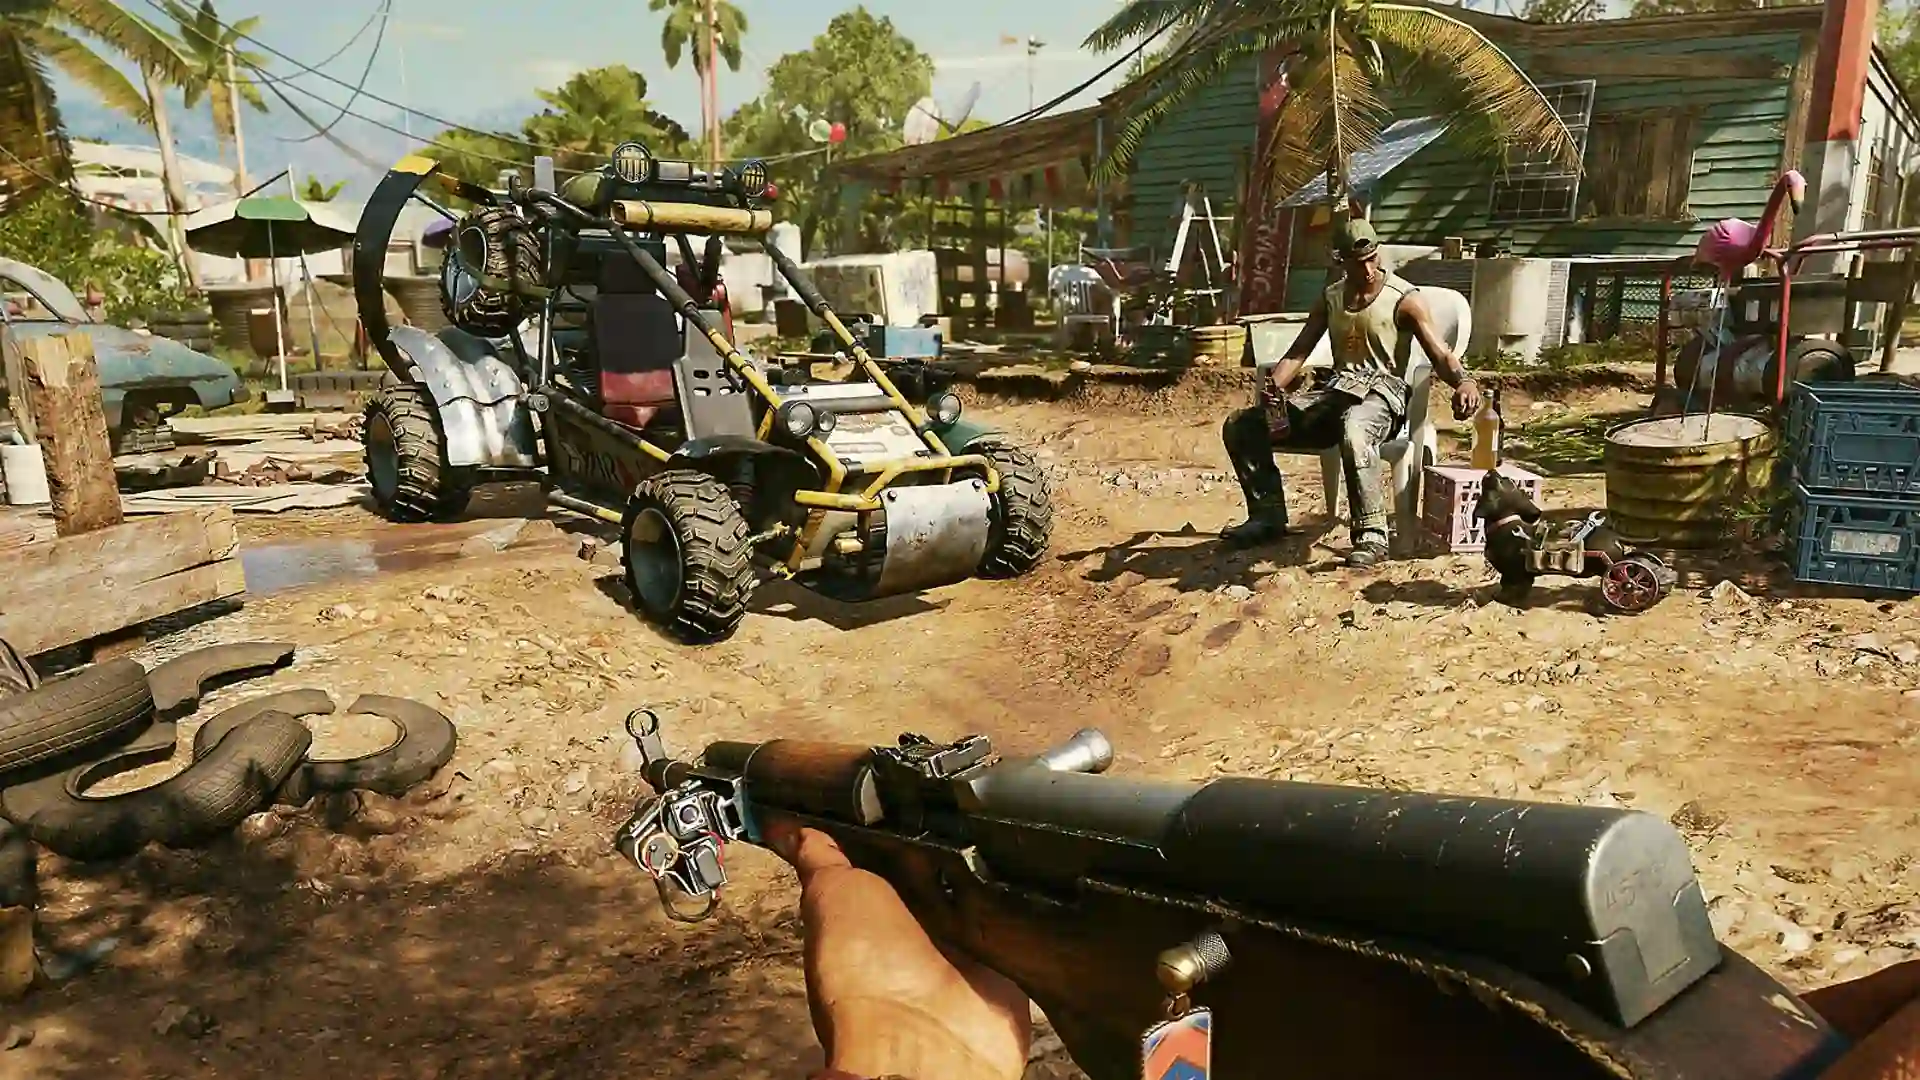 Far Cry 6: saiba tudo sobre o jogo e veja se vale a pena comprar